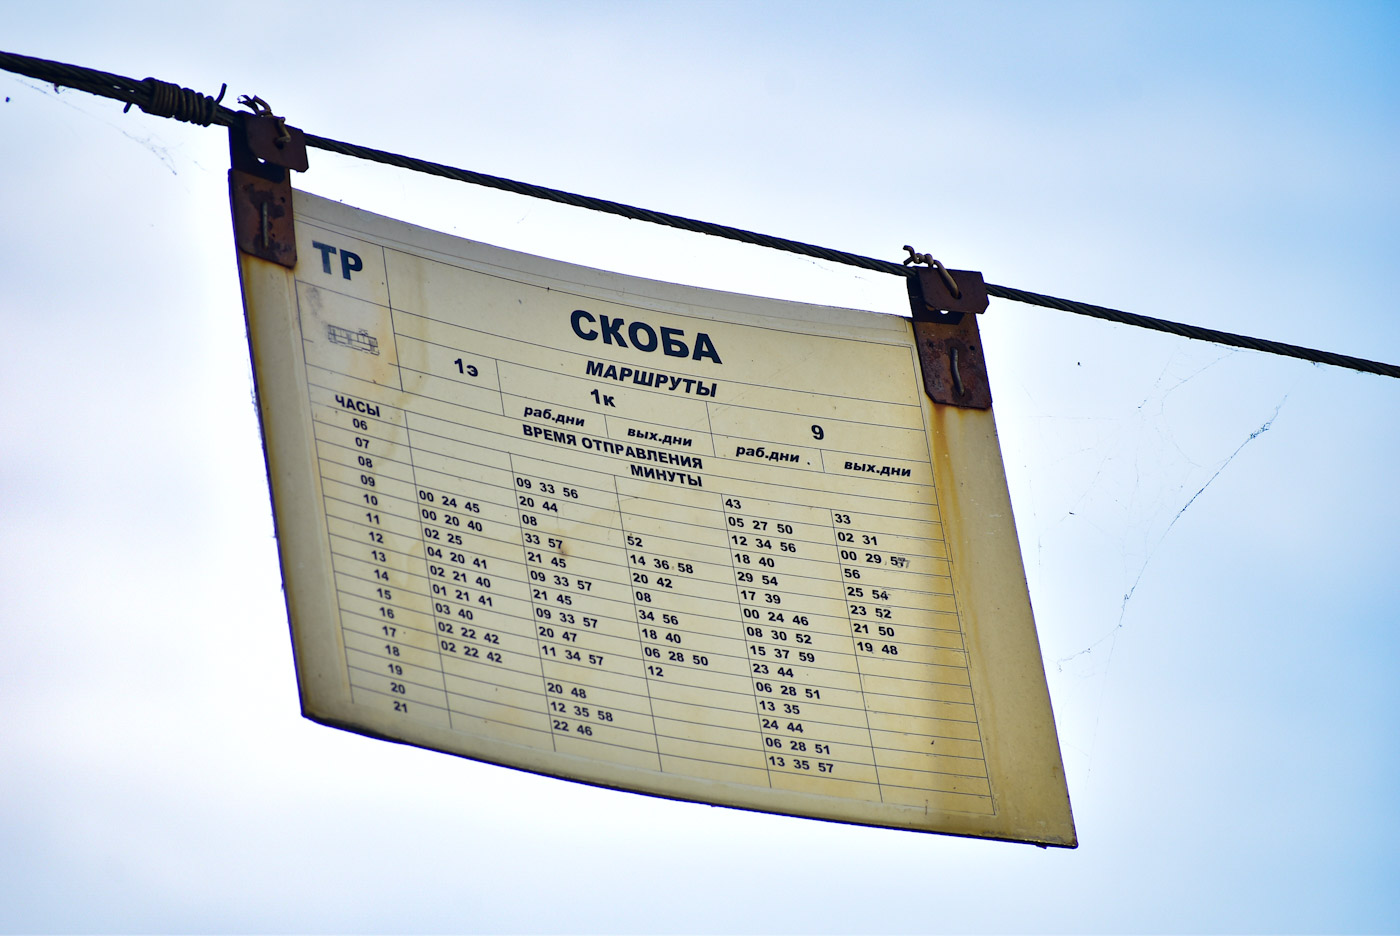 Нижни Новгород — Маршрутные таблички и расписания